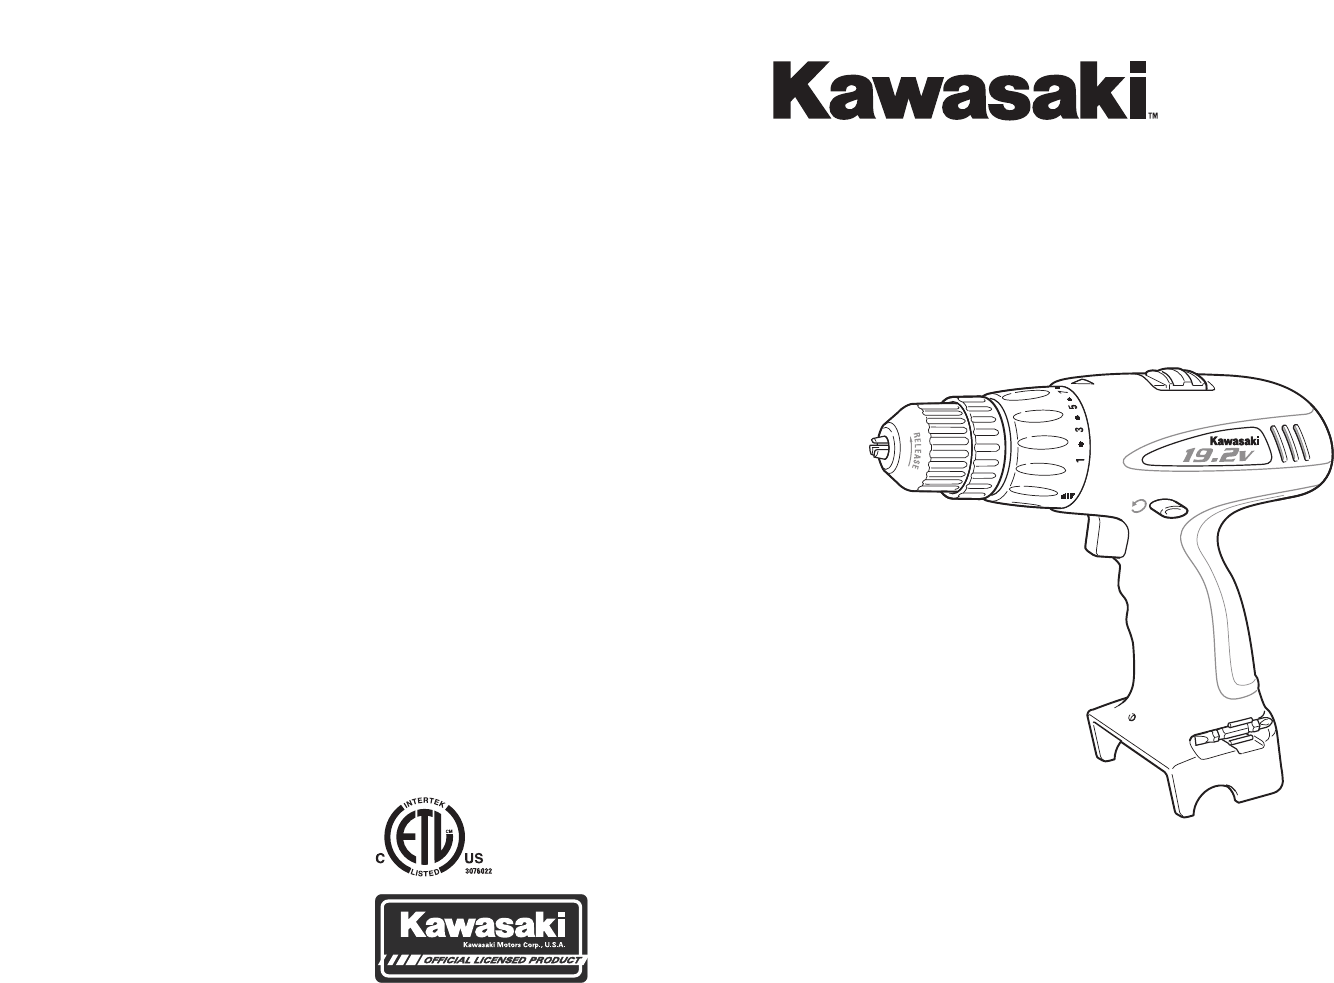 Kawasaki 19.2v cordless drill manual